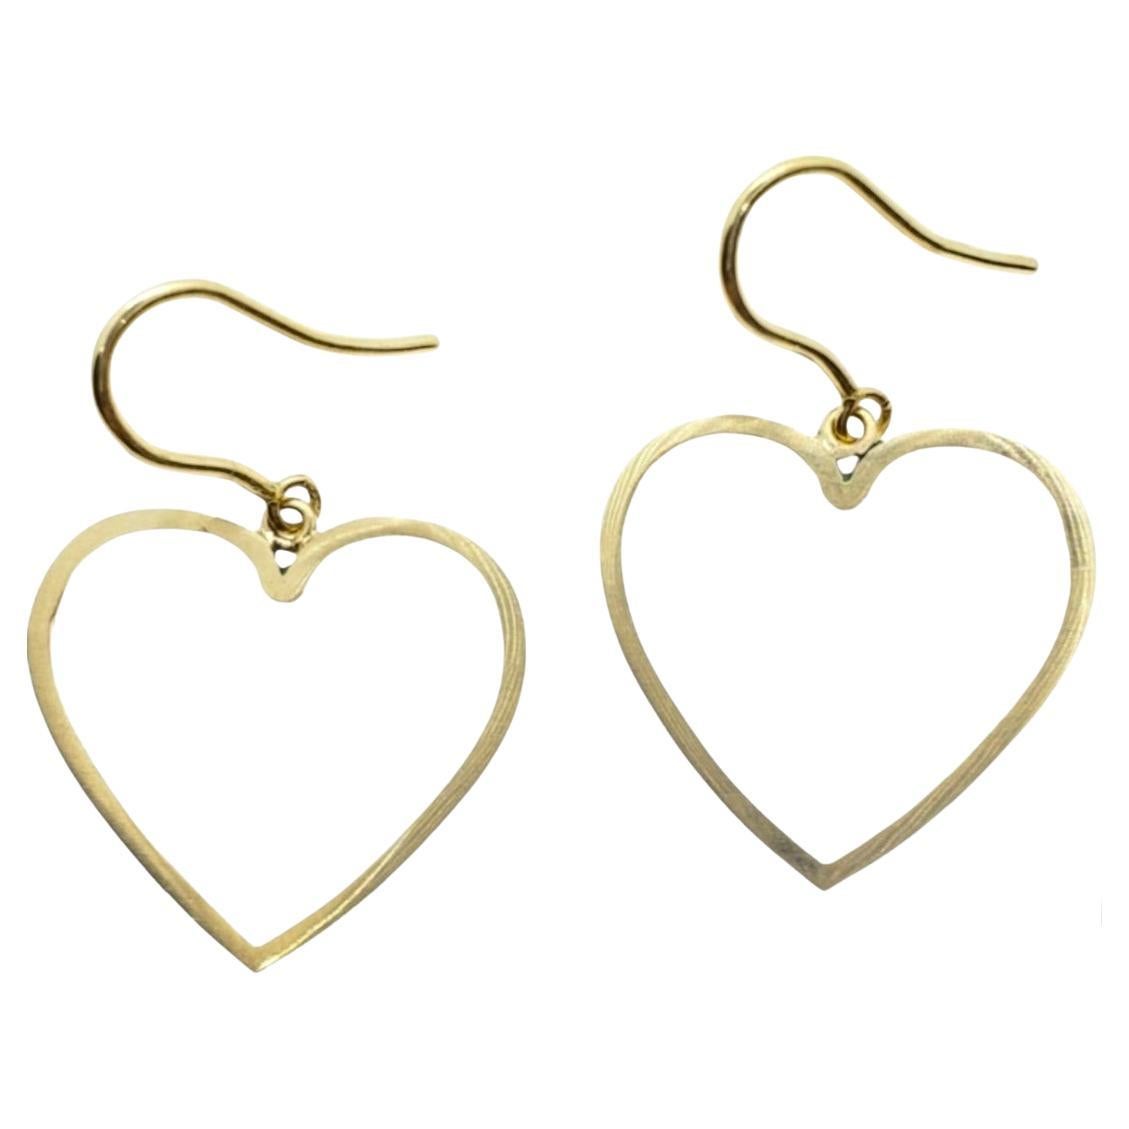 Open Heart Outline Dangle Earrings on Handmade Euro Wire in 14K Yellow Gold